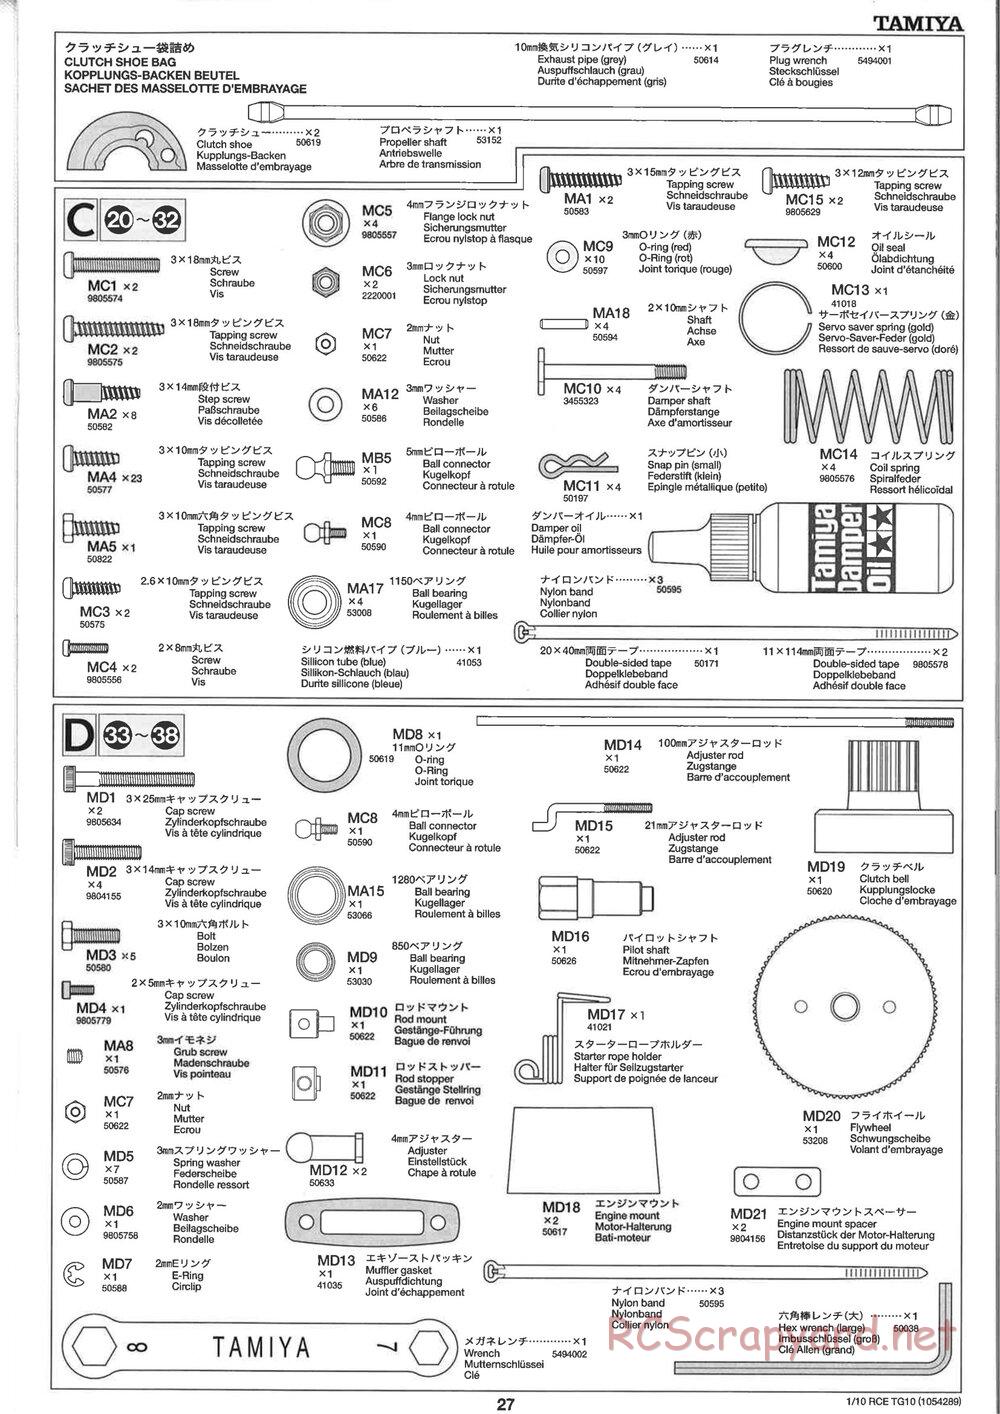 Tamiya - TG10 Mk.1 Chassis - Manual - Page 27